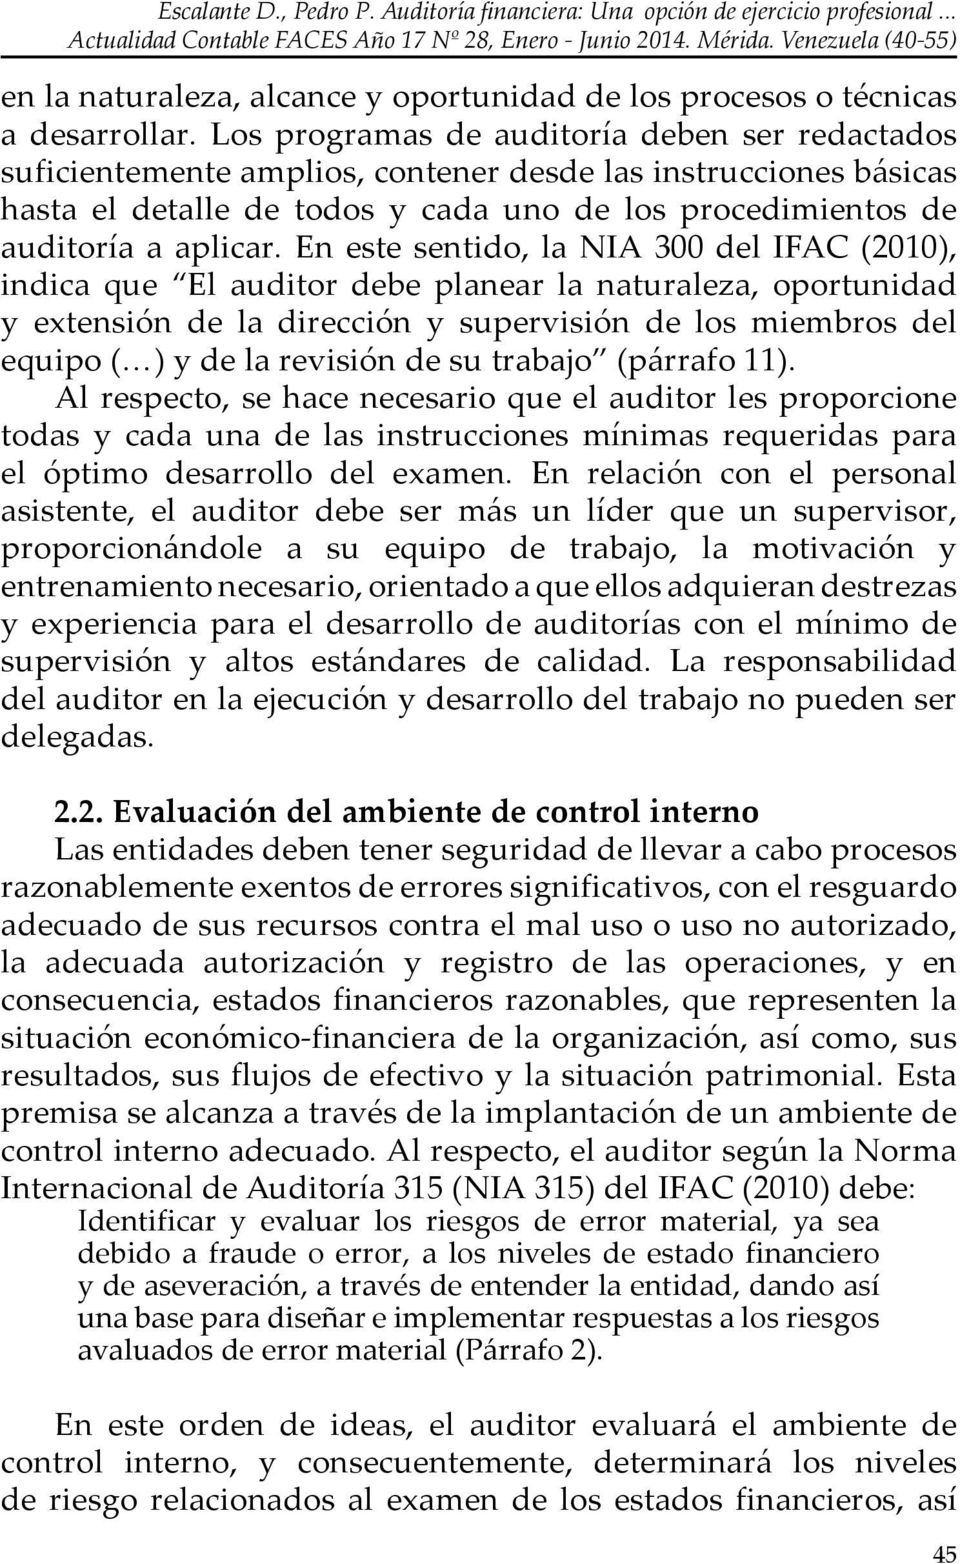 En este sentido, la NIA 300 del IFAC (2010), indica que El auditor debe planear la naturaleza, oportunidad y extensión de la dirección y supervisión de los miembros del equipo ( ) y de la revisión de